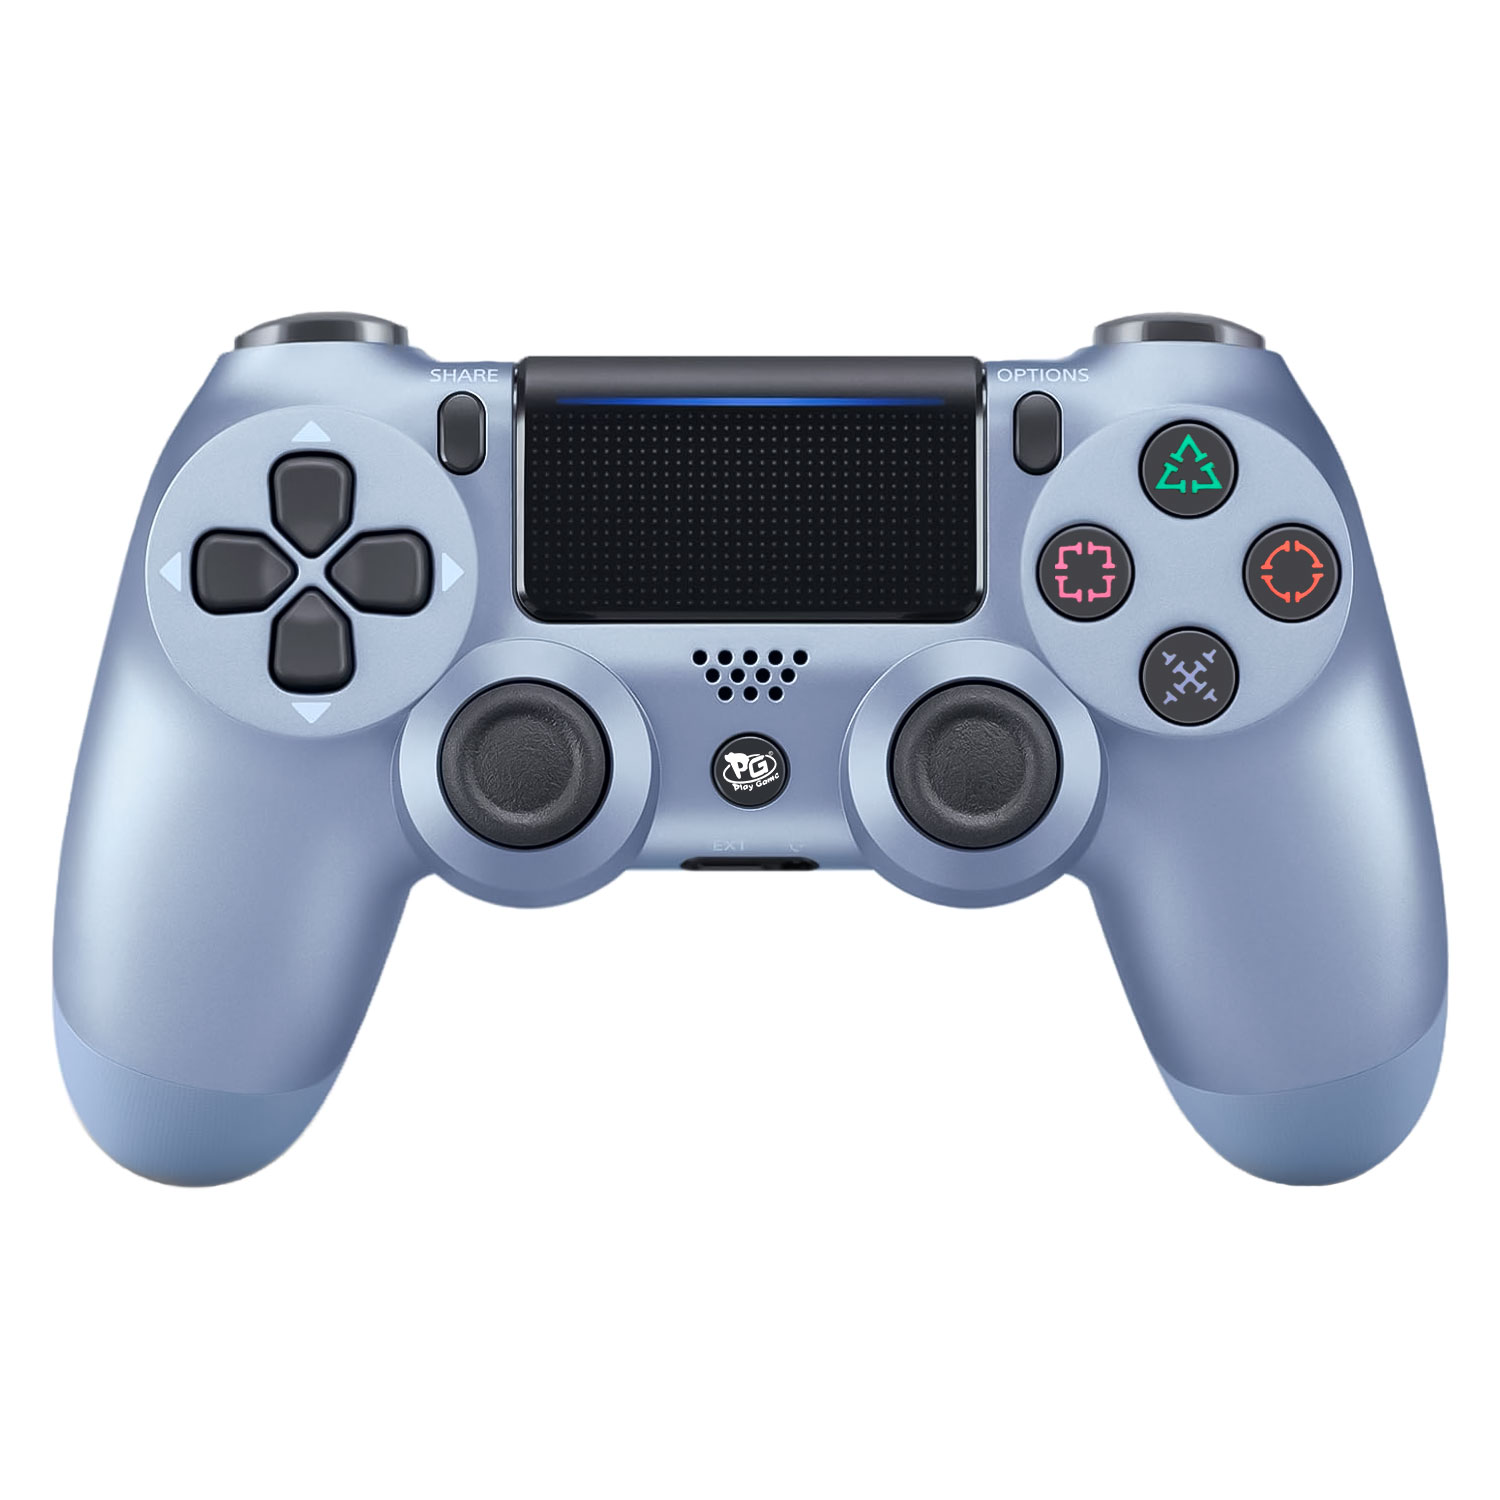 Controle Play Game Dualshock 4 Sem Fio para PS4 - Azul